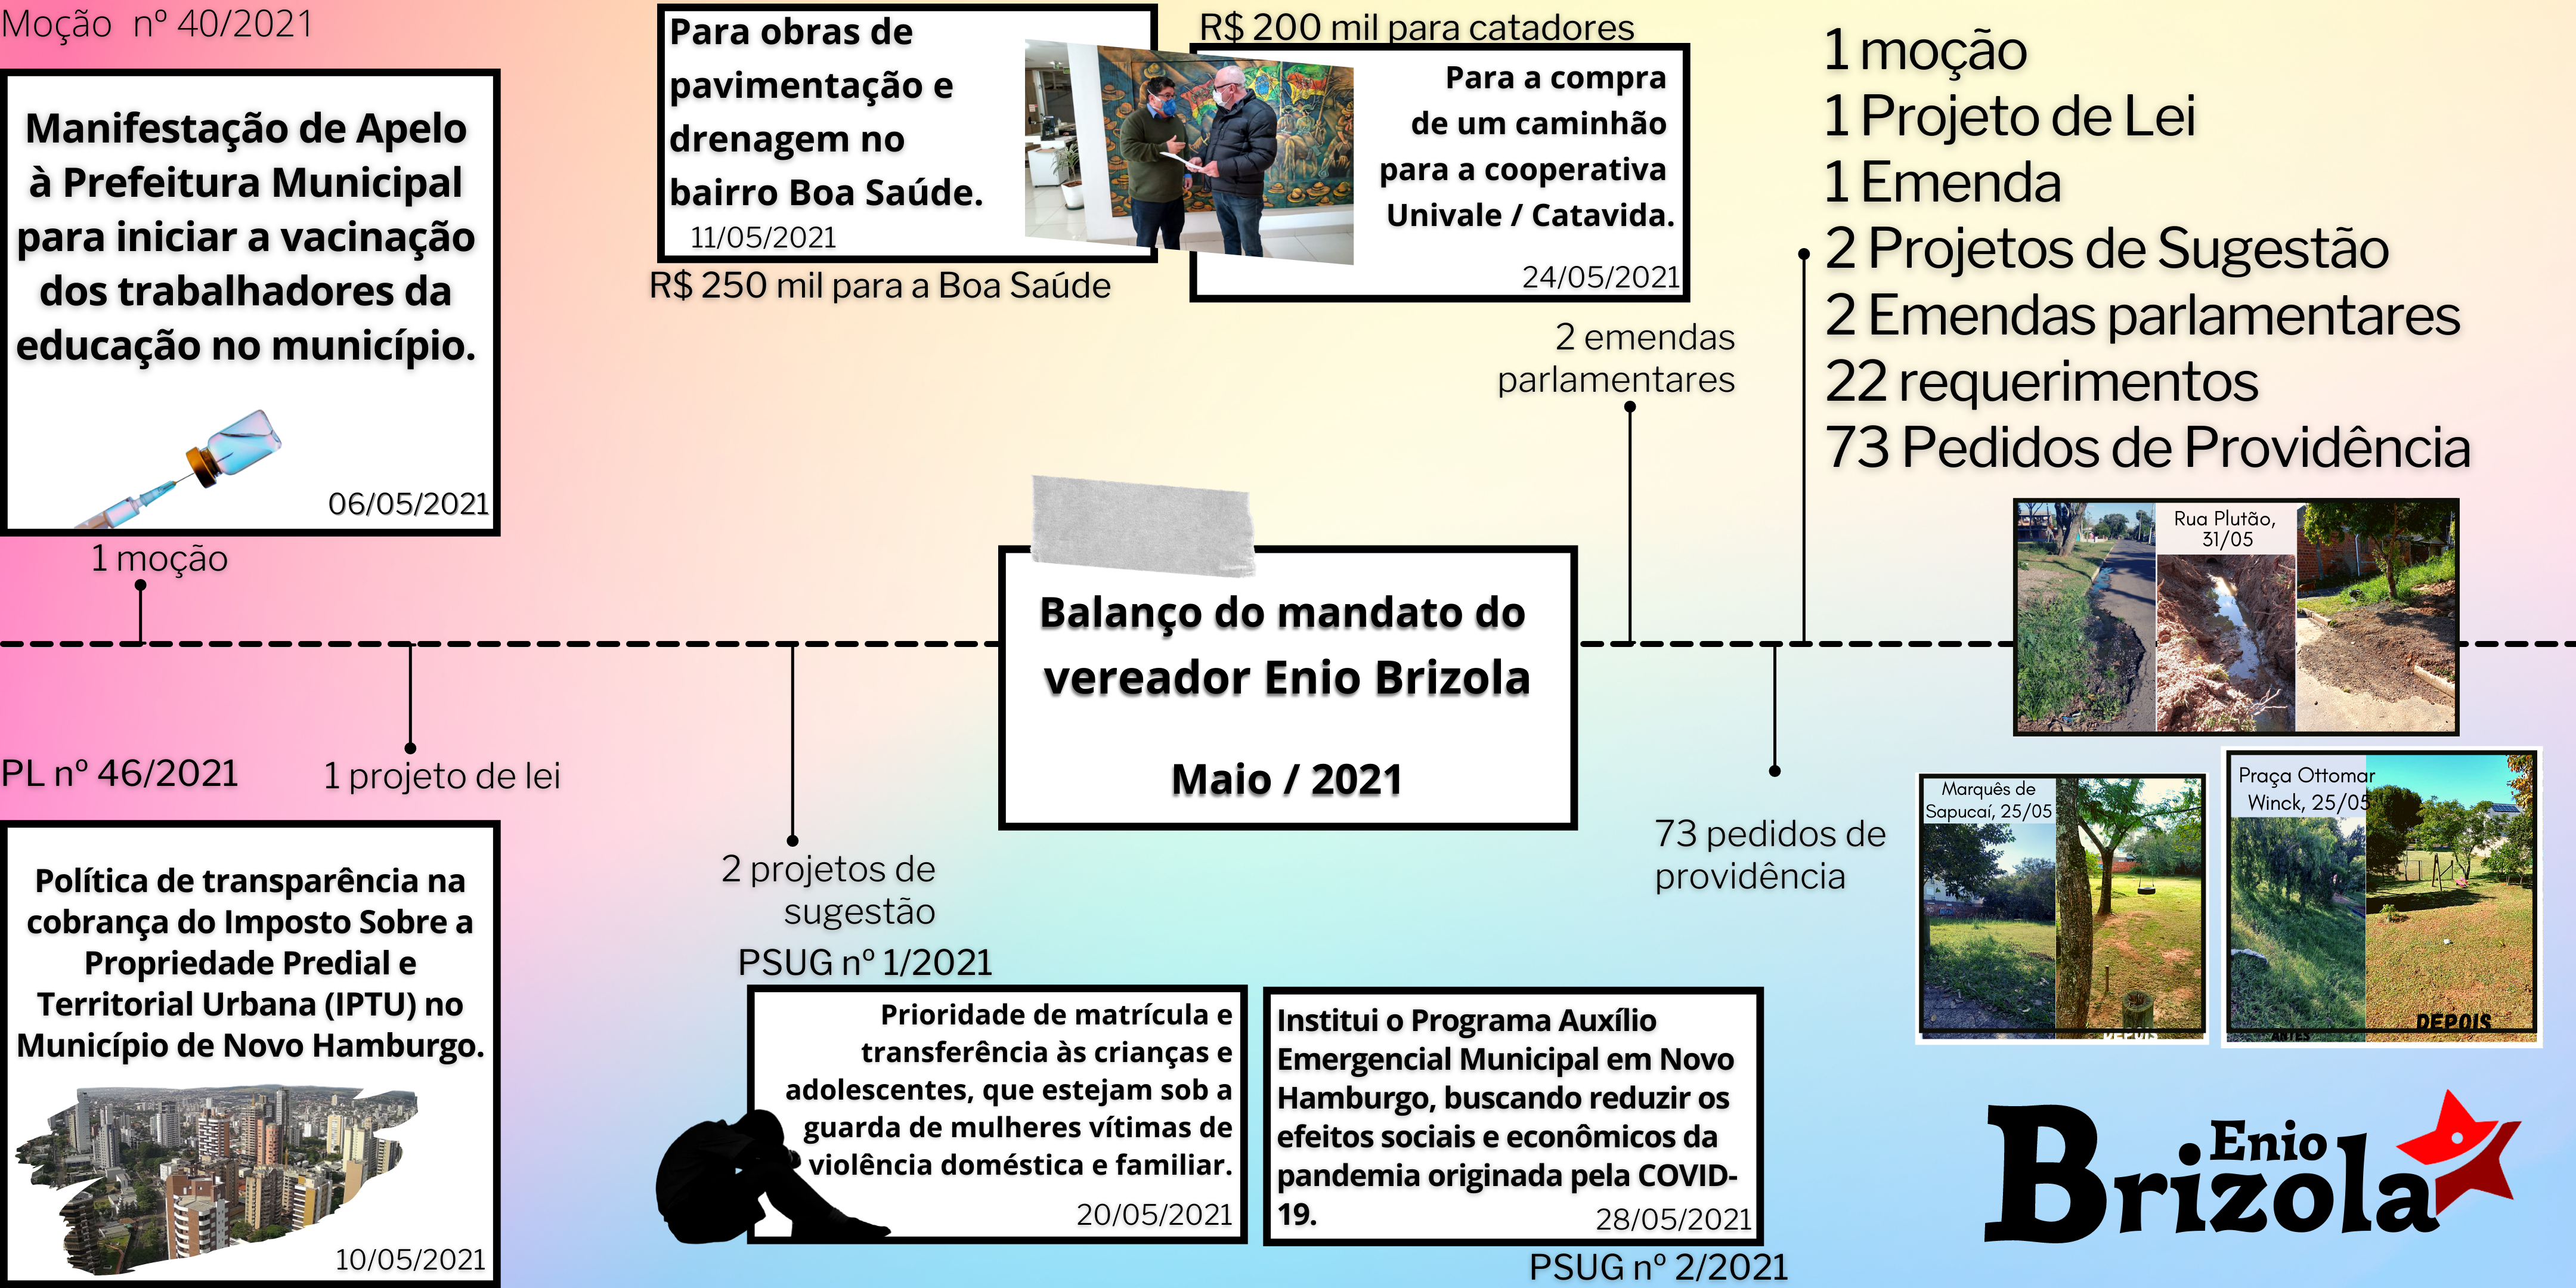 08/06/2021 - Brizola fará balanço do mandato mensalmente